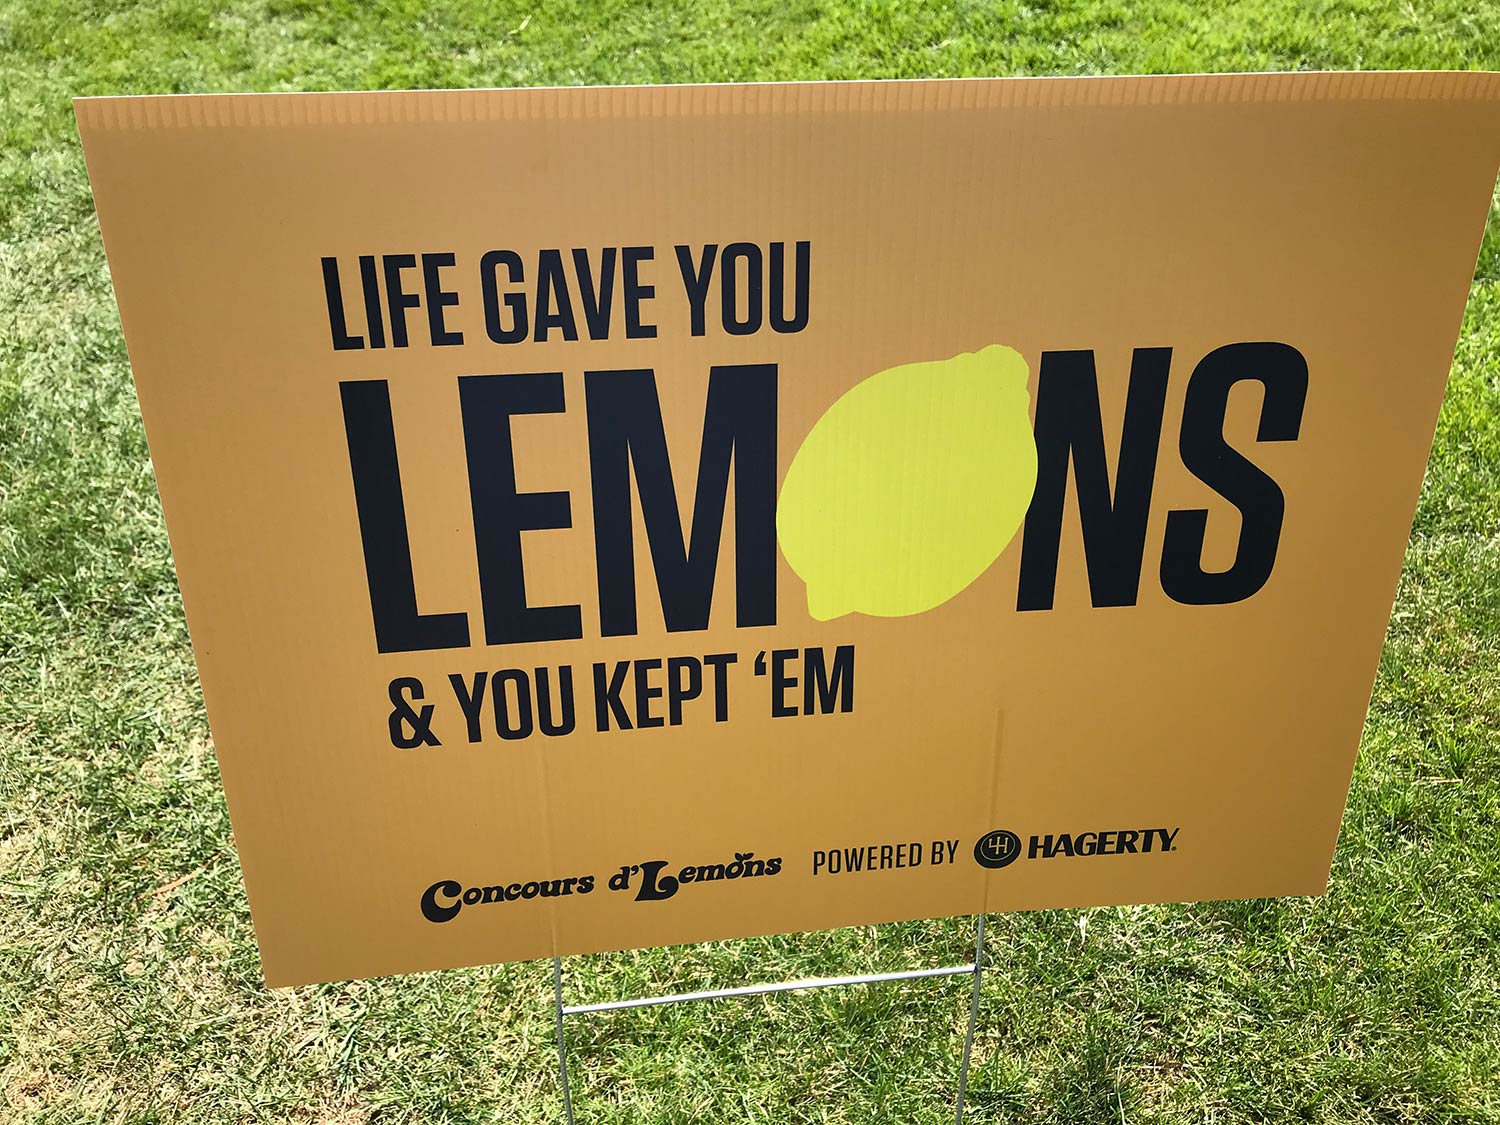 Life gave you lemons & you kept 'em